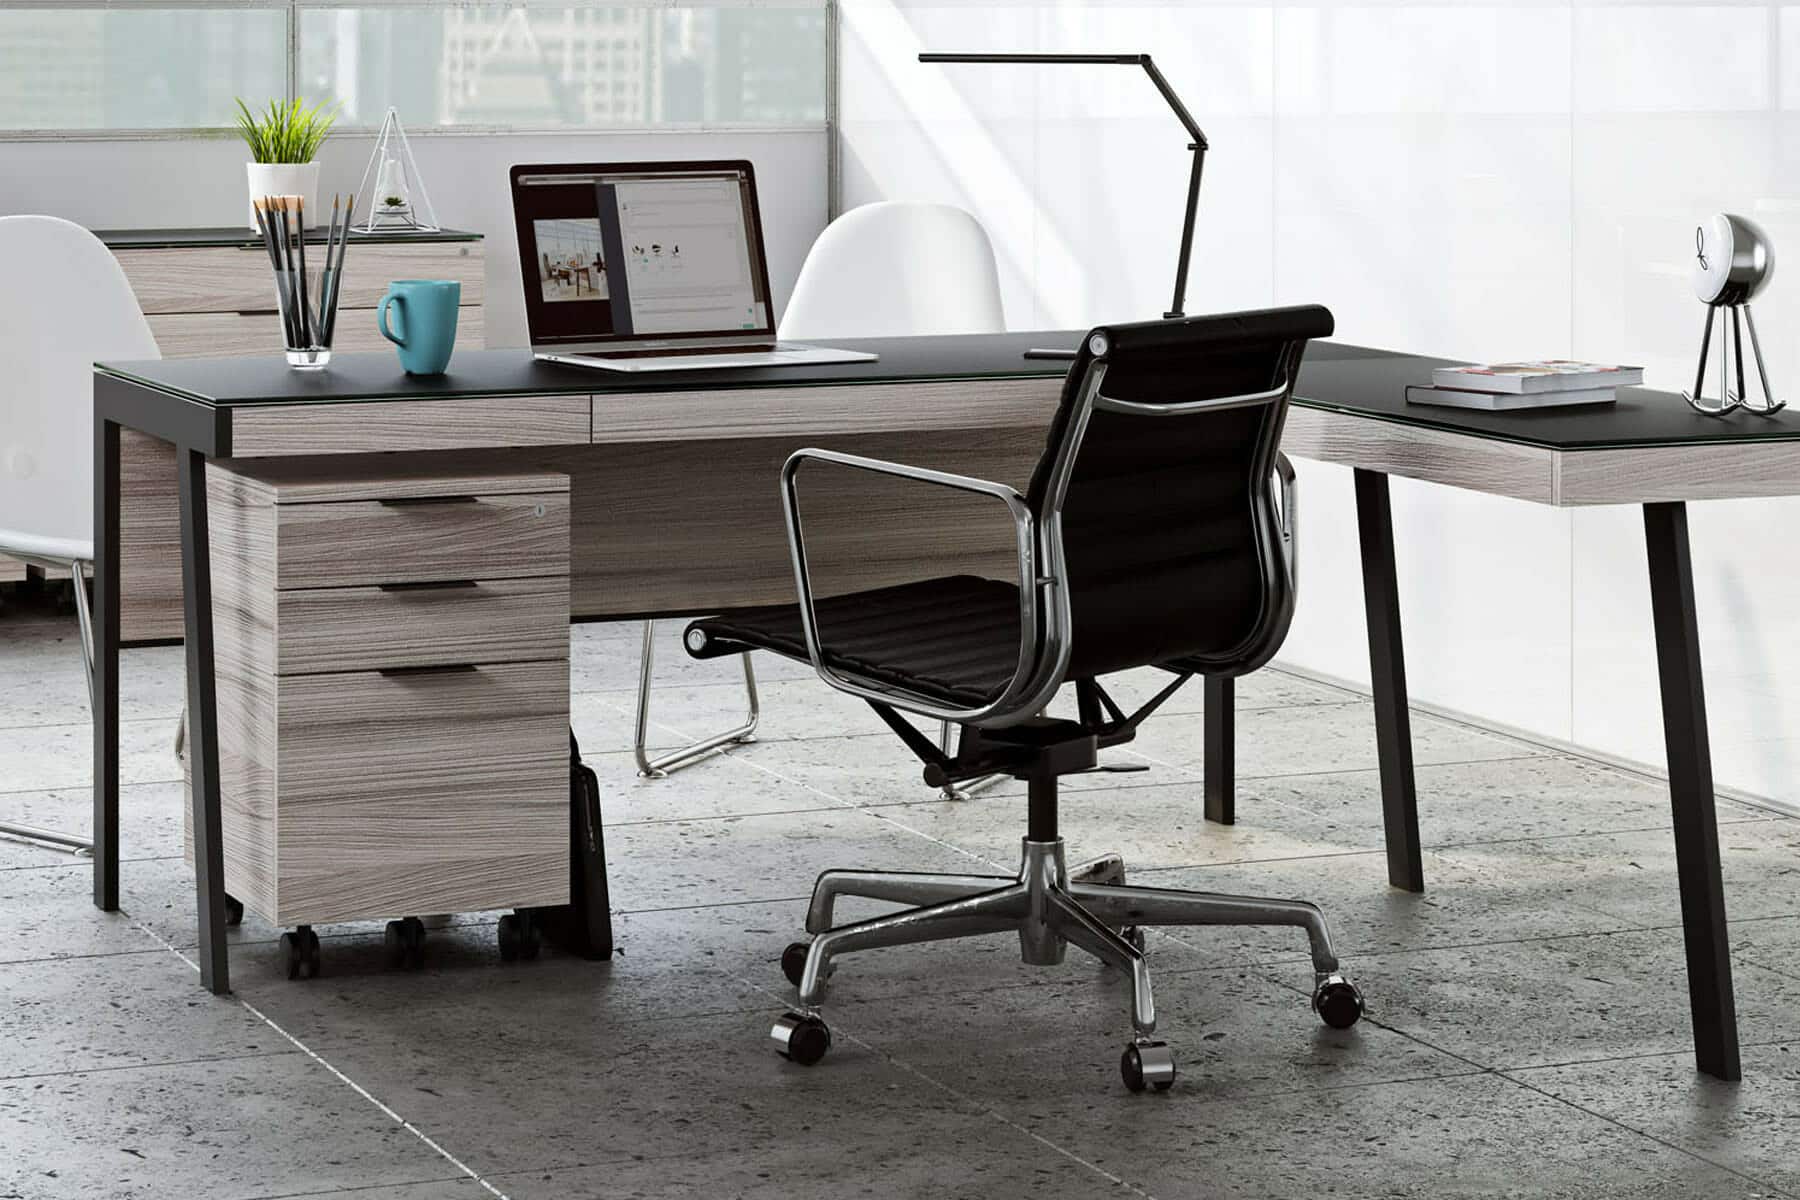 modern desk designs